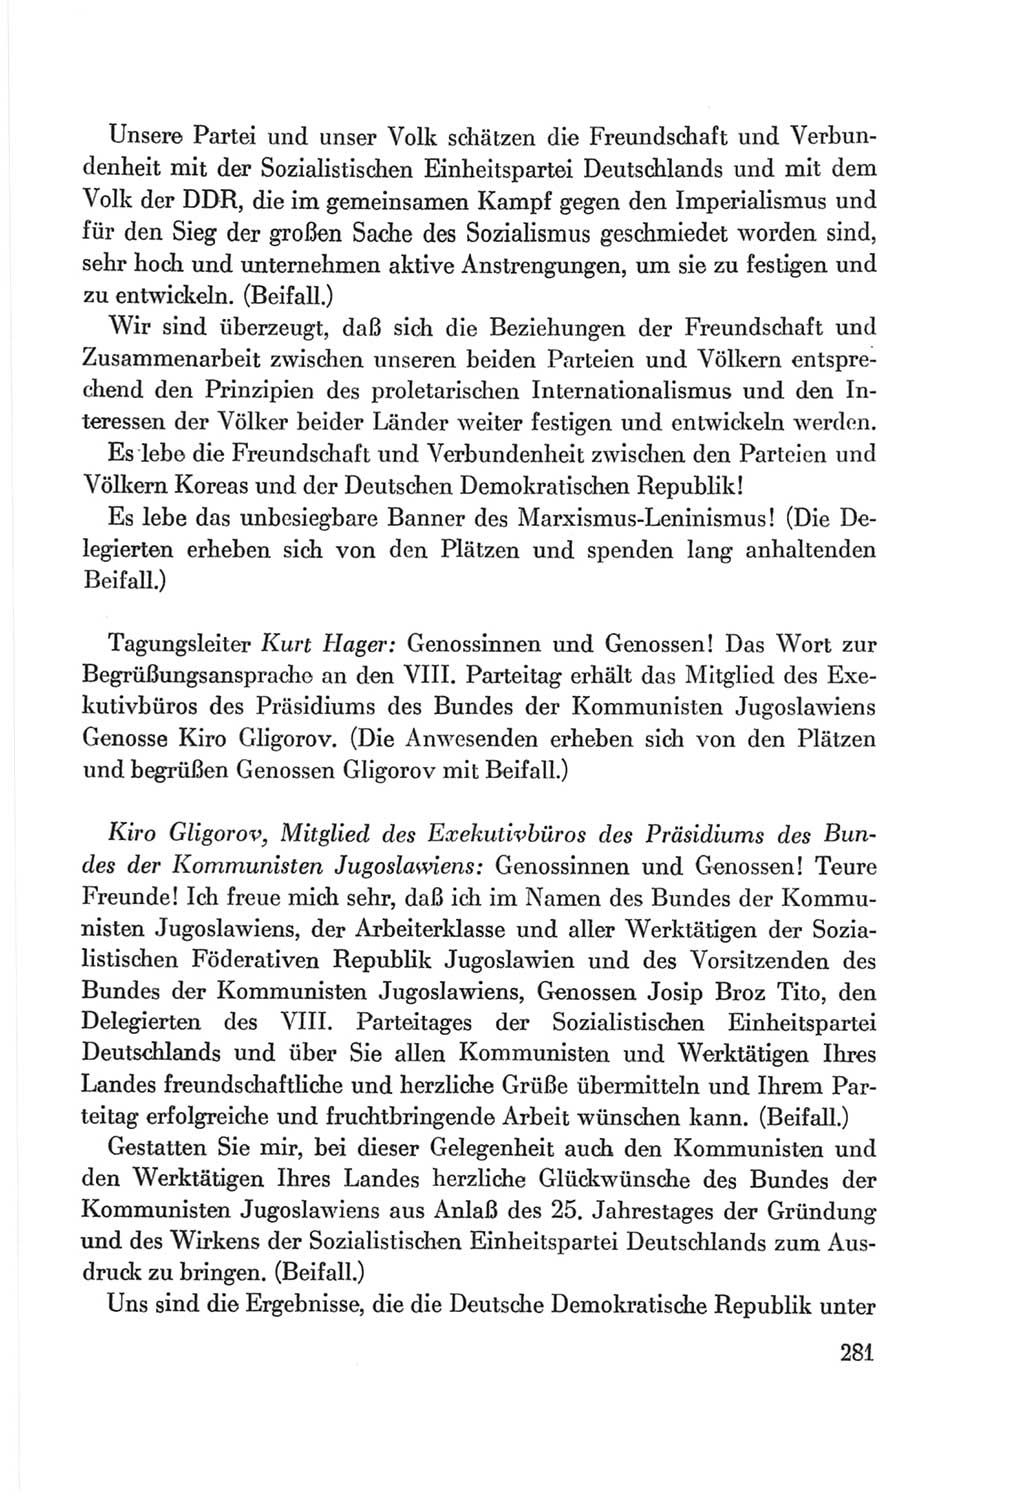 Protokoll der Verhandlungen des Ⅷ. Parteitages der Sozialistischen Einheitspartei Deutschlands (SED) [Deutsche Demokratische Republik (DDR)] 1971, Band 1, Seite 281 (Prot. Verh. Ⅷ. PT SED DDR 1971, Bd. 1, S. 281)